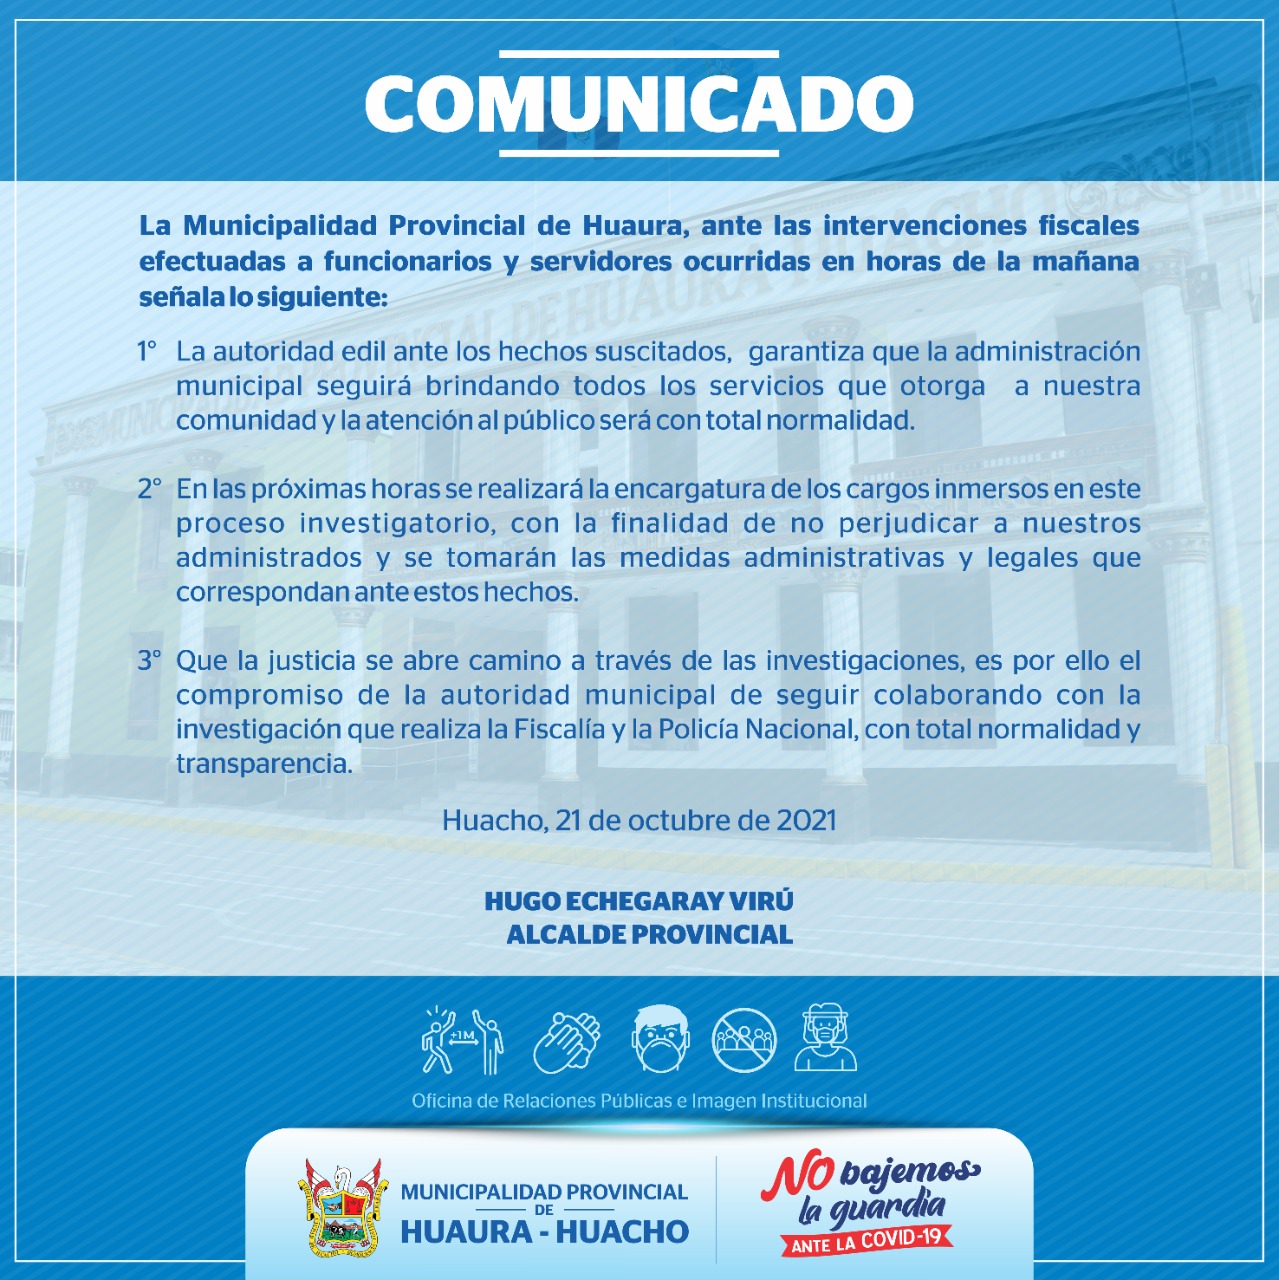 Comunuicado emitido por la Municipalidad de Huaura